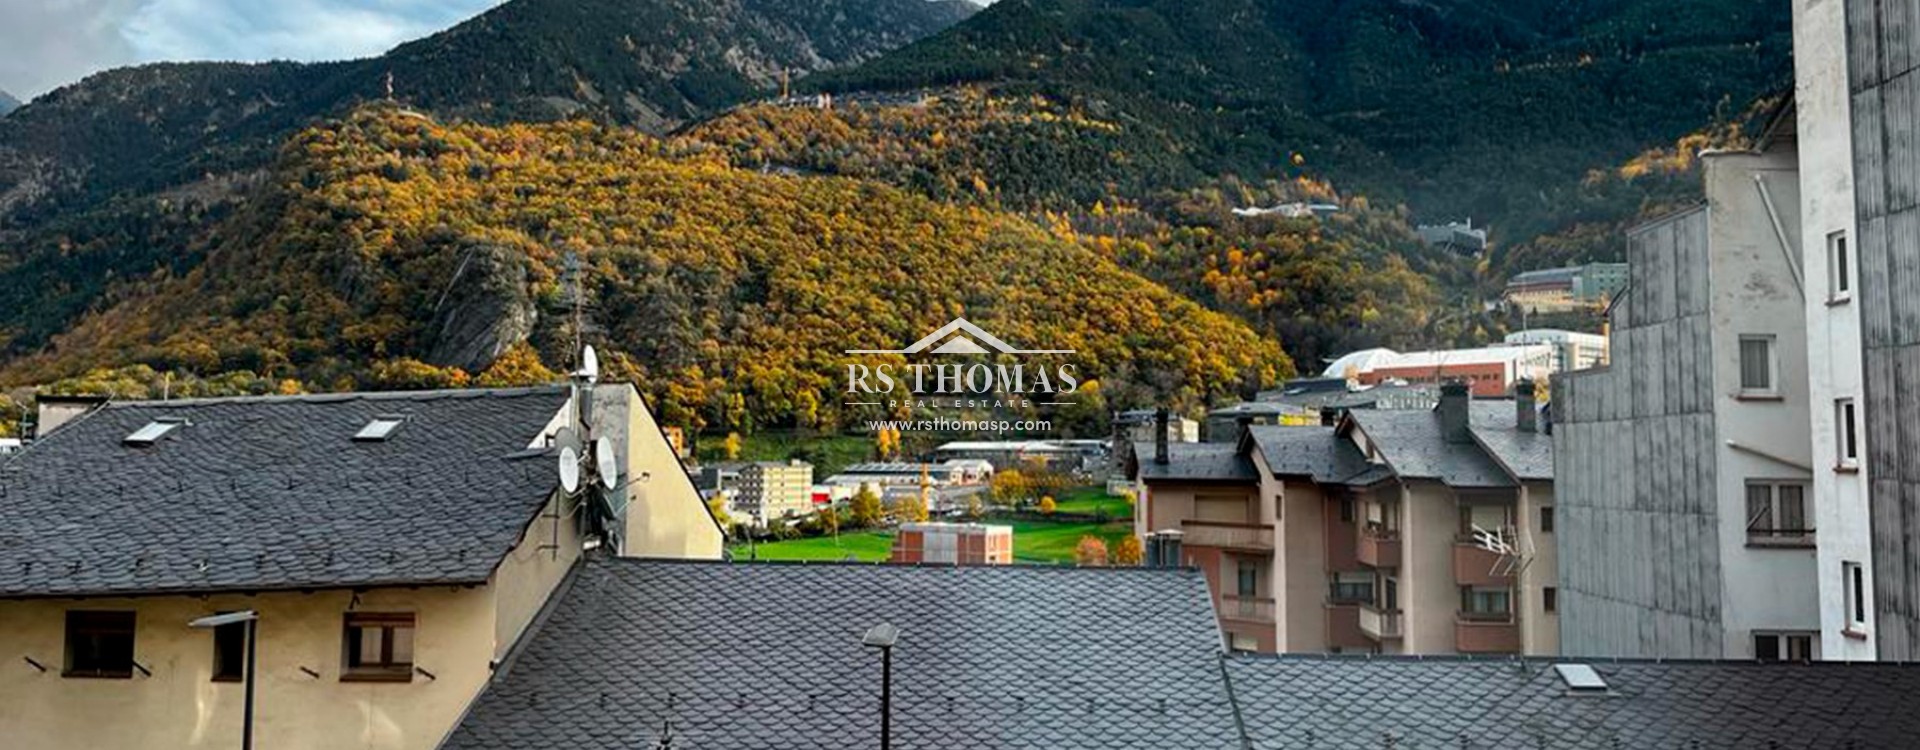 Piso para comprar Andorra La Vella